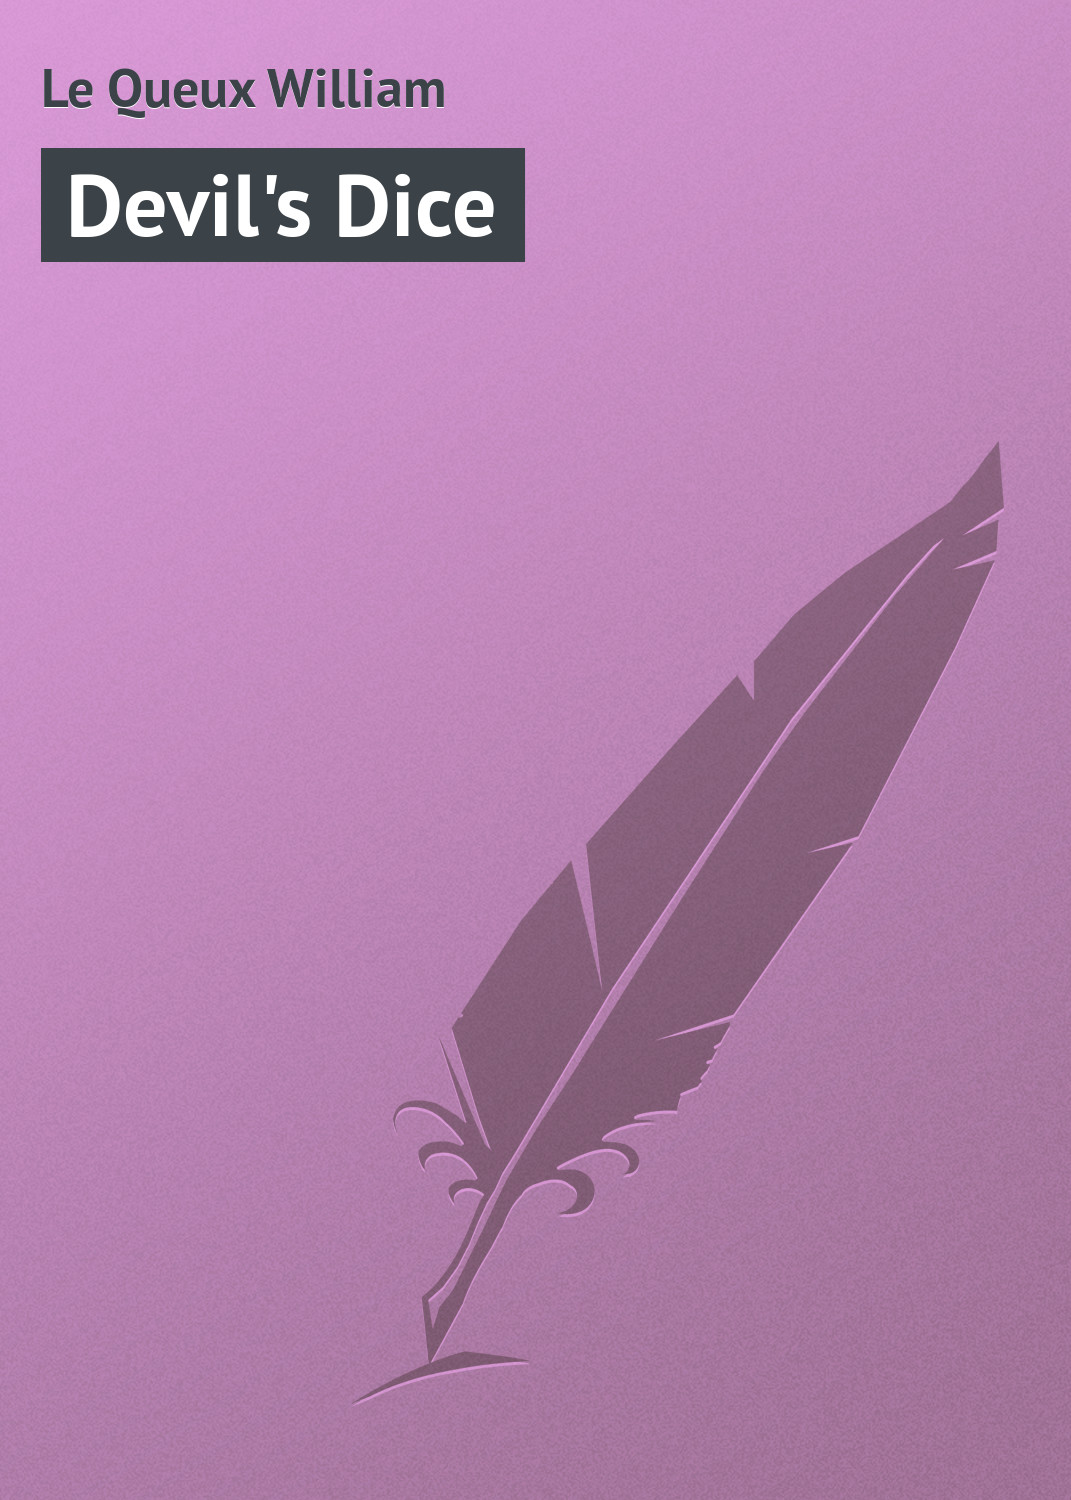 Книга Devil's Dice из серии , созданная William Le Queux, может относится к жанру Зарубежная классика. Стоимость электронной книги Devil's Dice с идентификатором 23157579 составляет 5.99 руб.